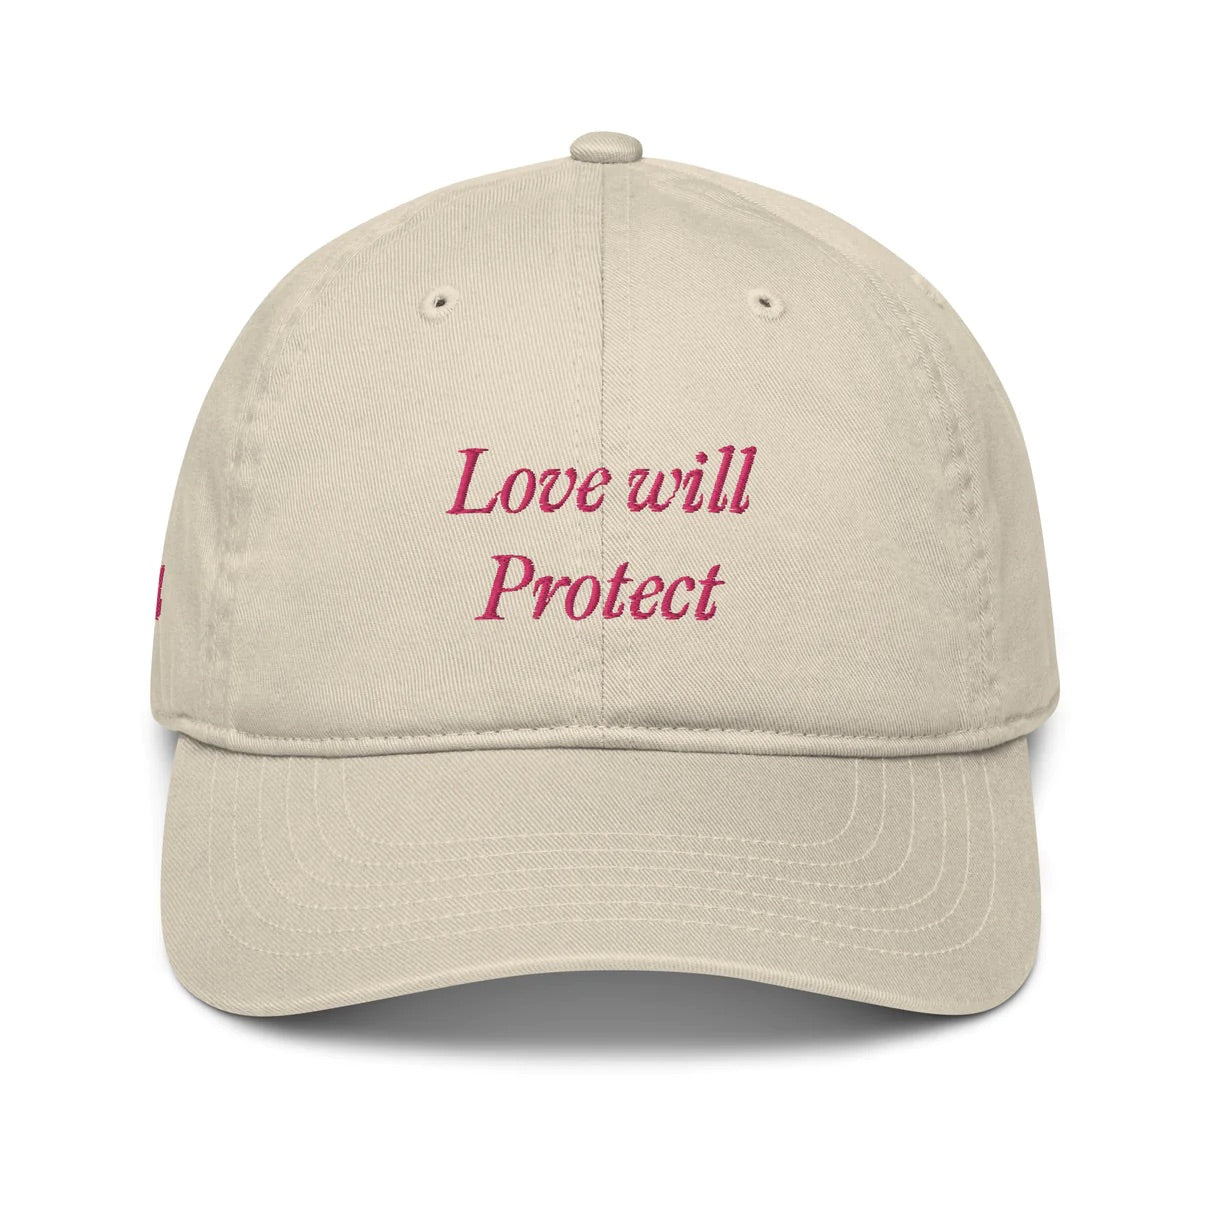 Love Will Protect 444 Cap & Rose Cream Bundle 3